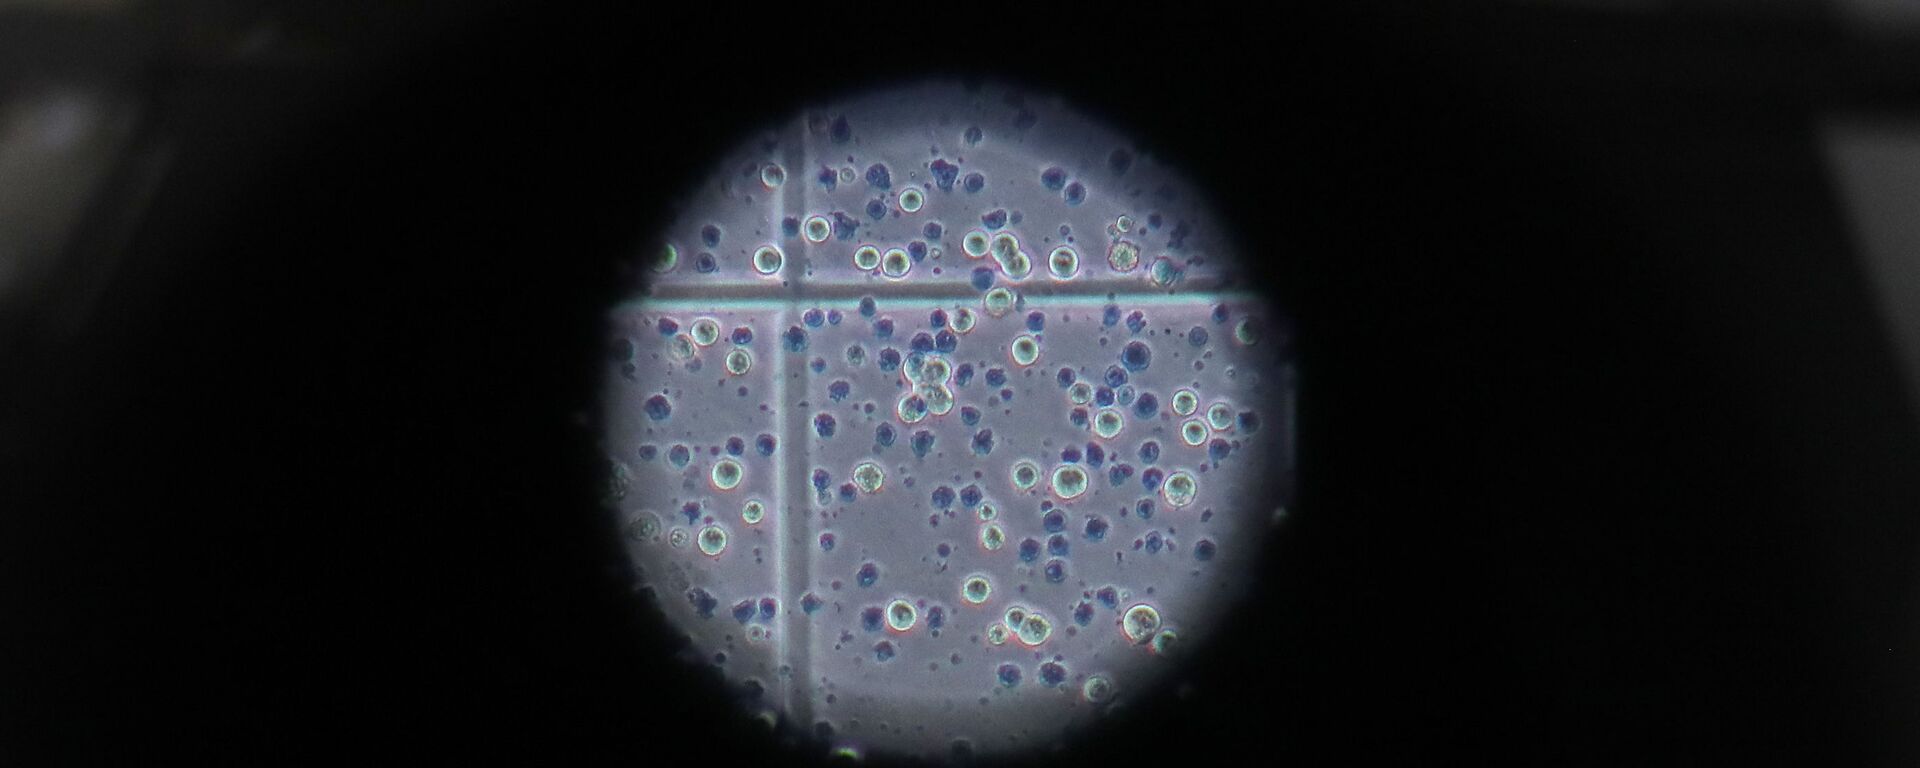 Клетки коронавируса под микроскопом - Sputnik Грузия, 1920, 19.07.2021